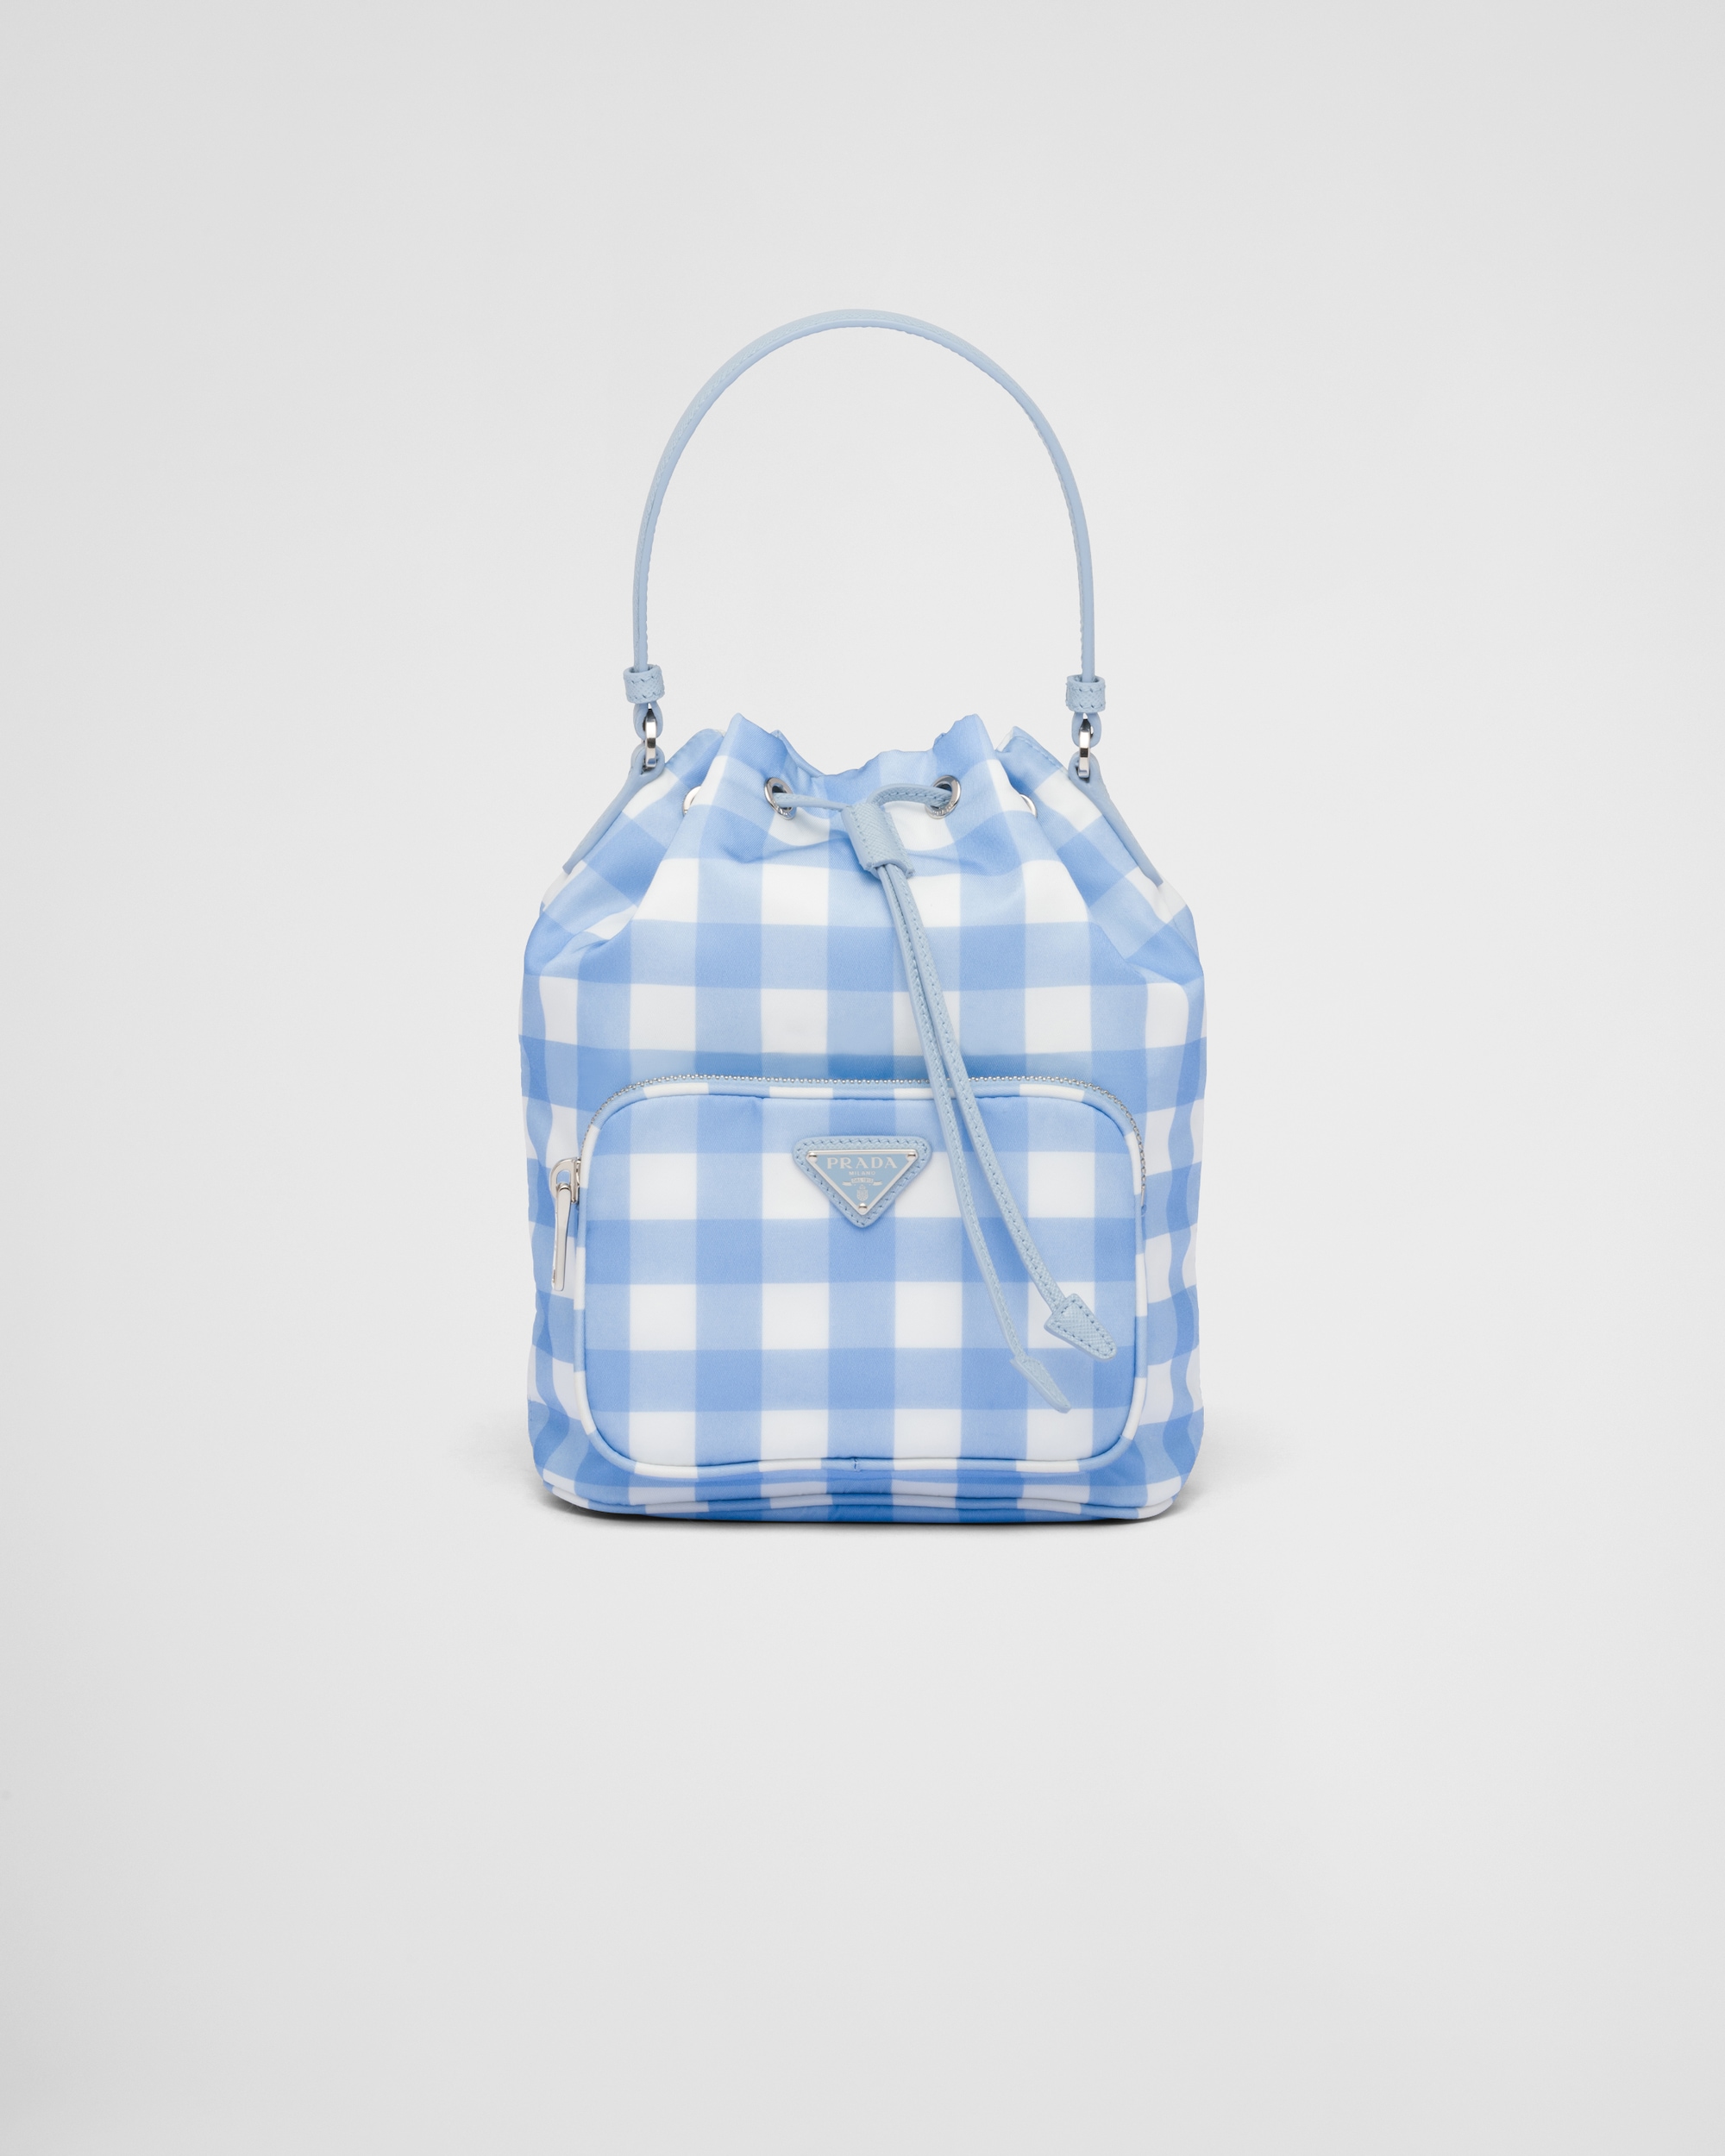 Best Prada Bags For Summer – l'Étoile de Saint Honoré